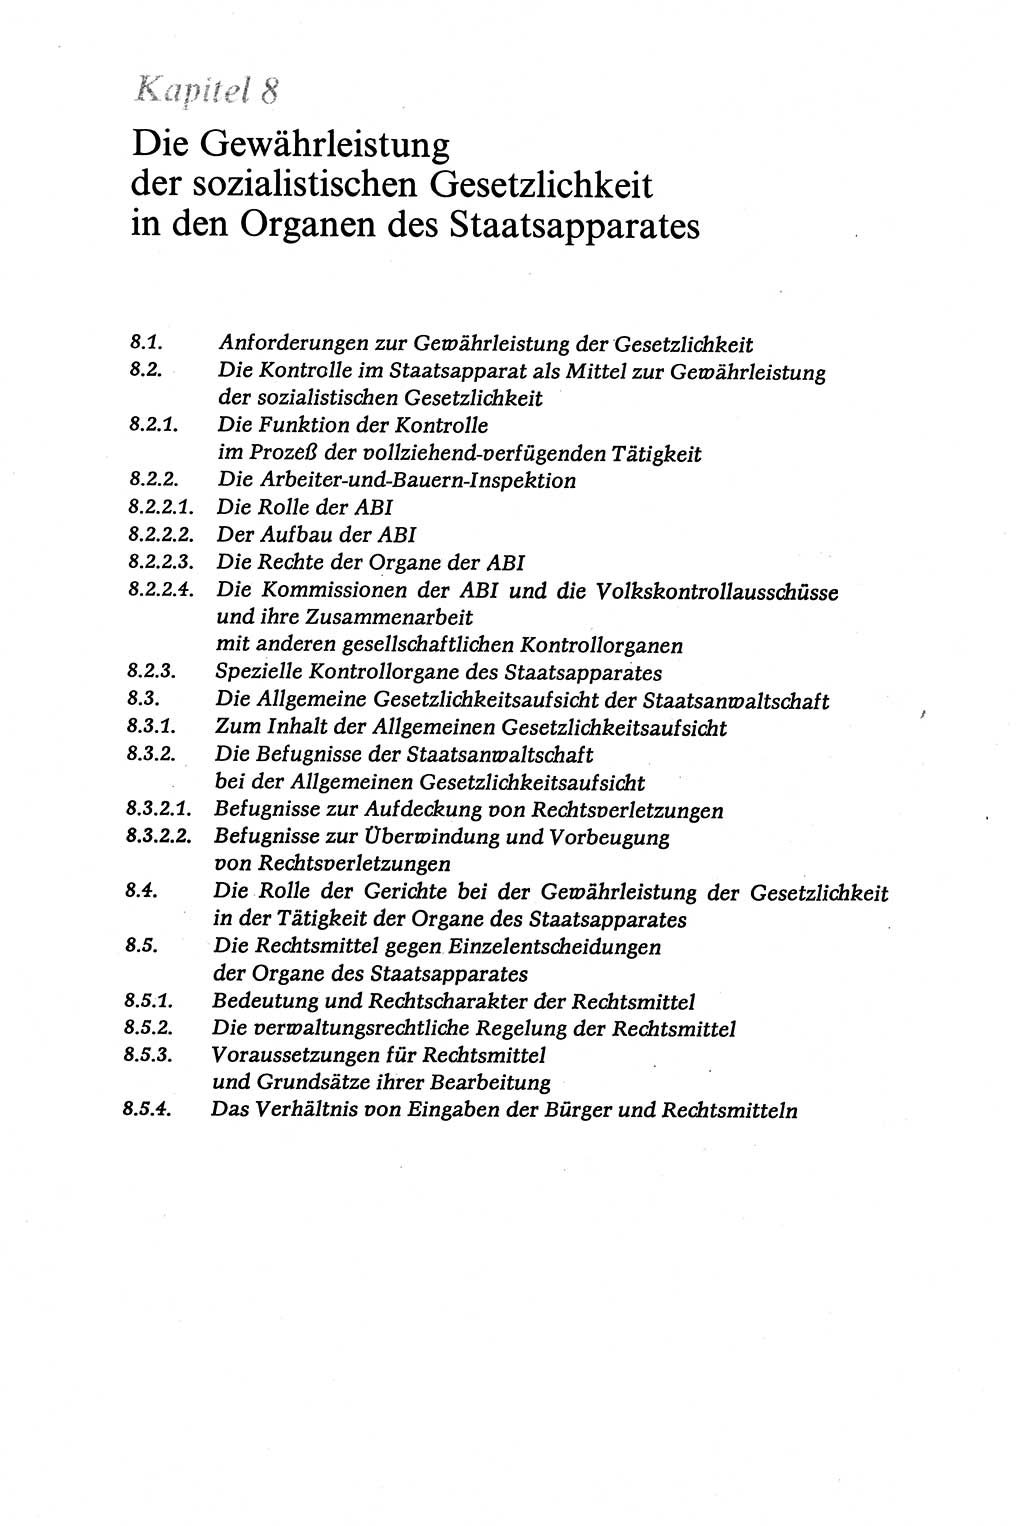 Verwaltungsrecht [Deutsche Demokratische Republik (DDR)], Lehrbuch 1979, Seite 300 (Verw.-R. DDR Lb. 1979, S. 300)